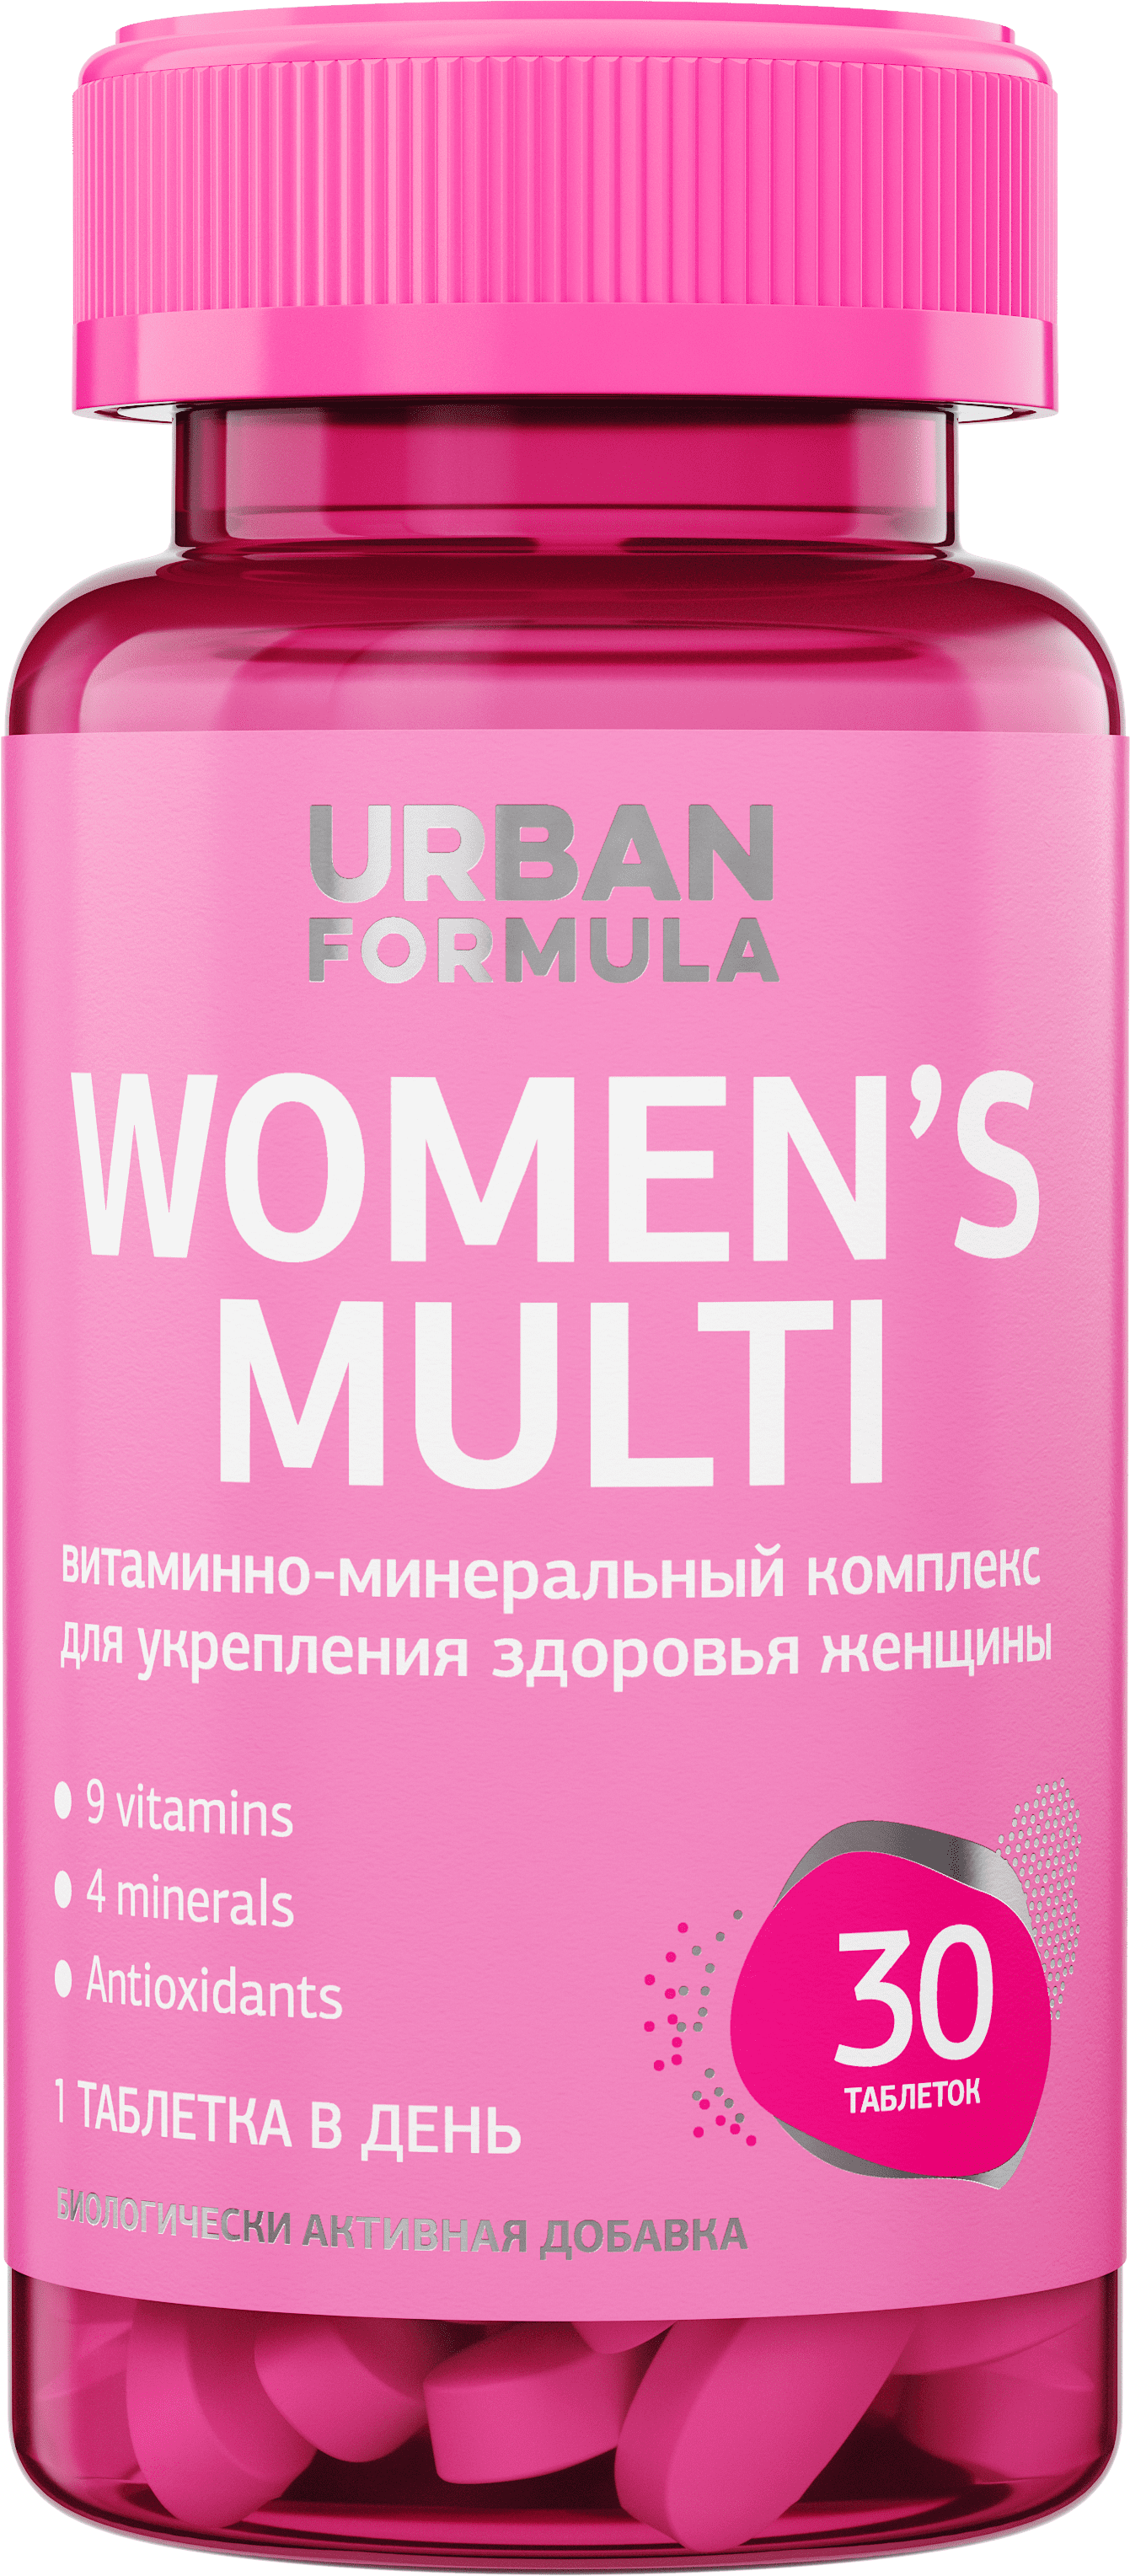 Women’s Multi